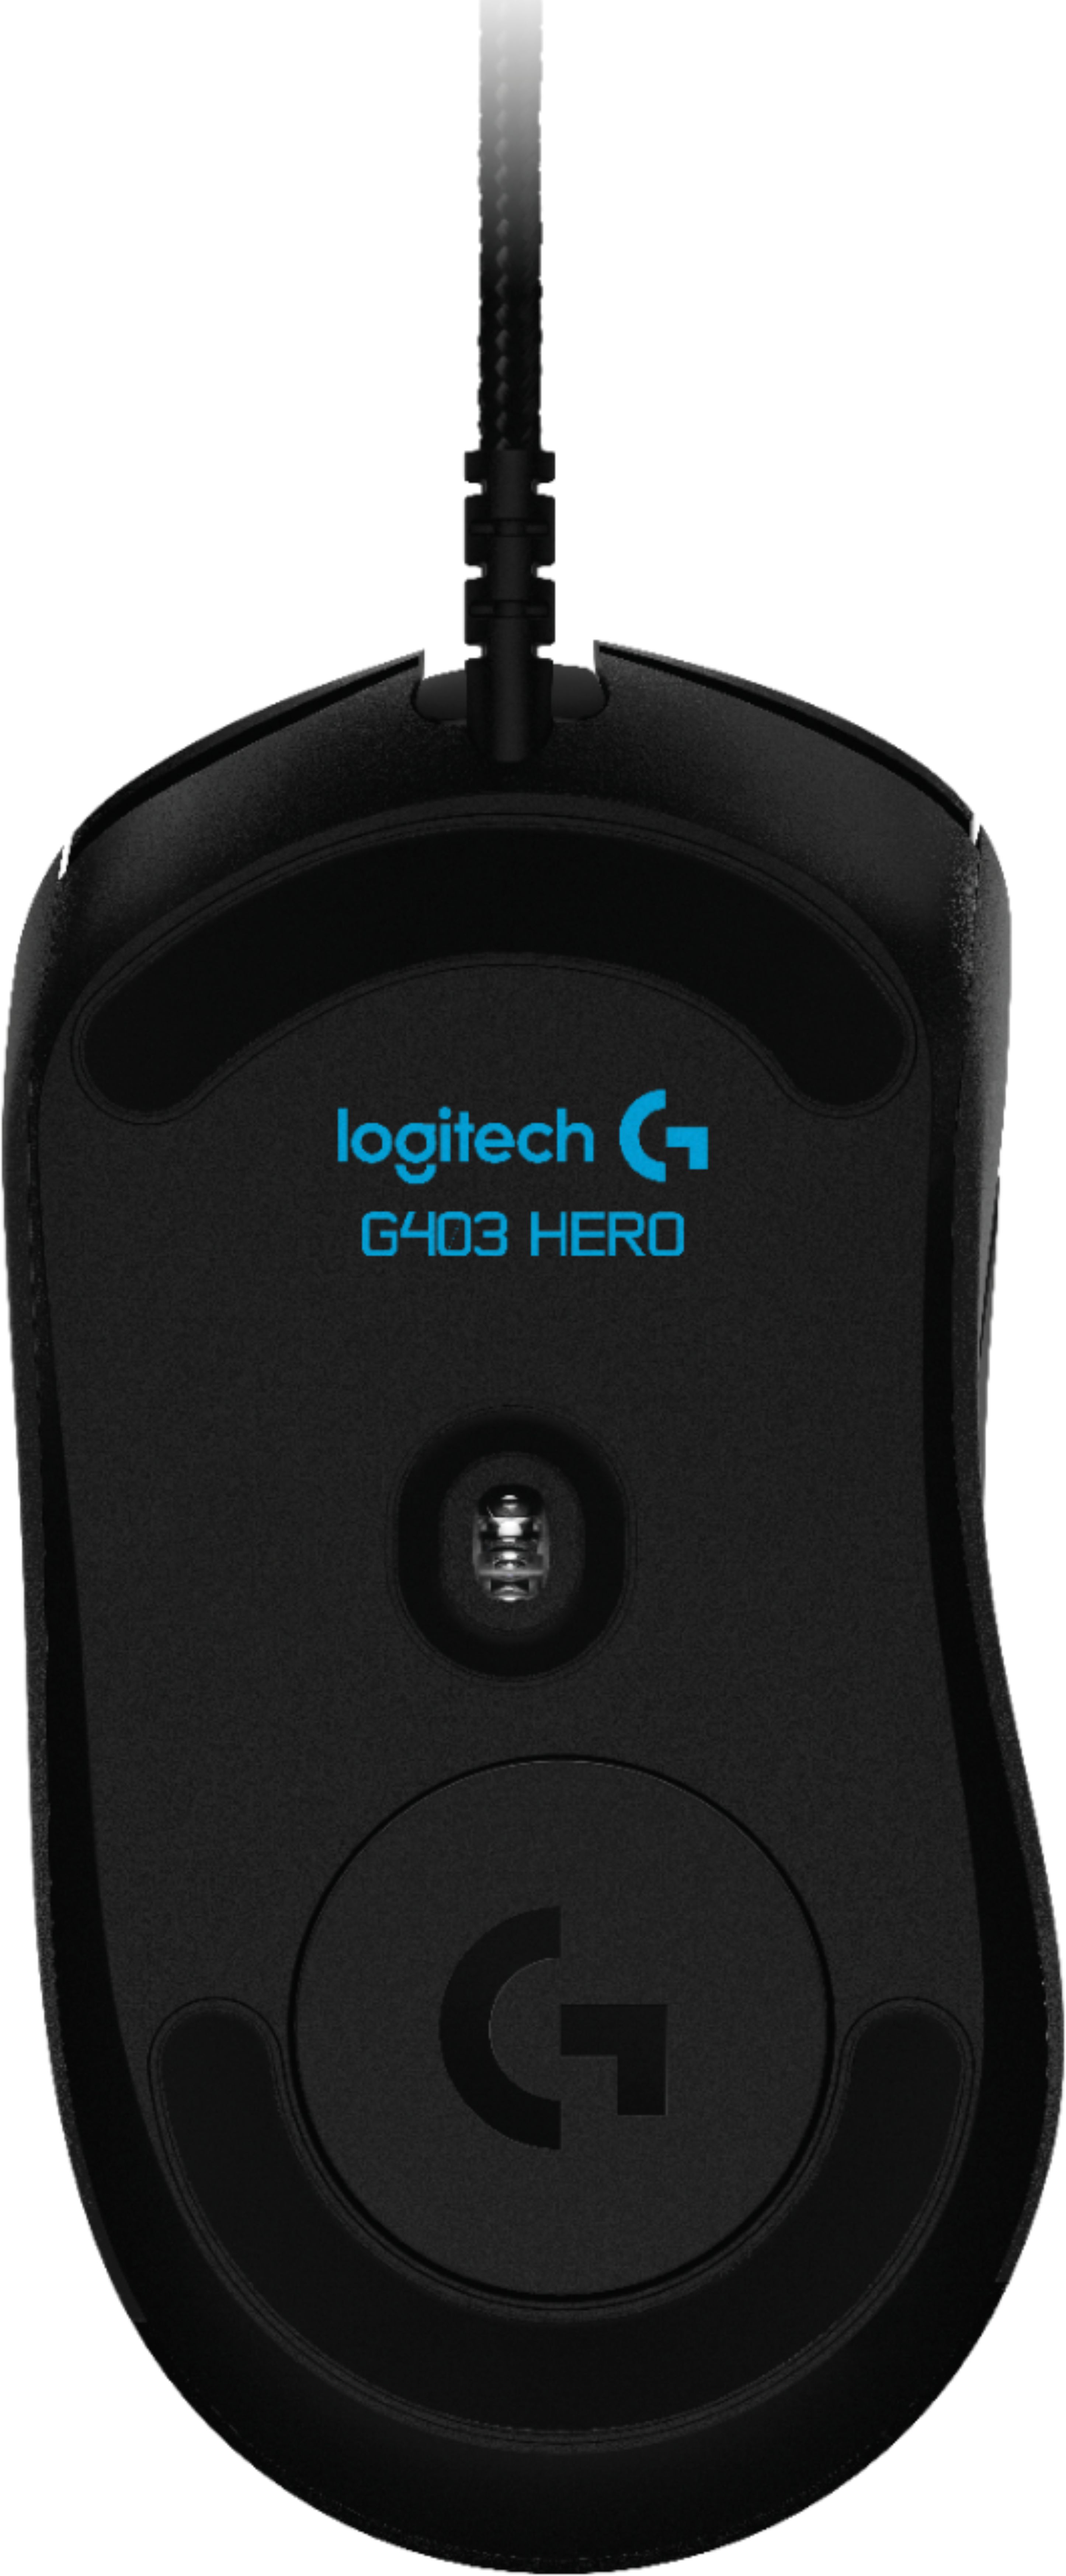 sensor middag Frastødende Best Buy: Logitech G403 (Hero) Wired Optical Gaming Mouse Black 910-005630